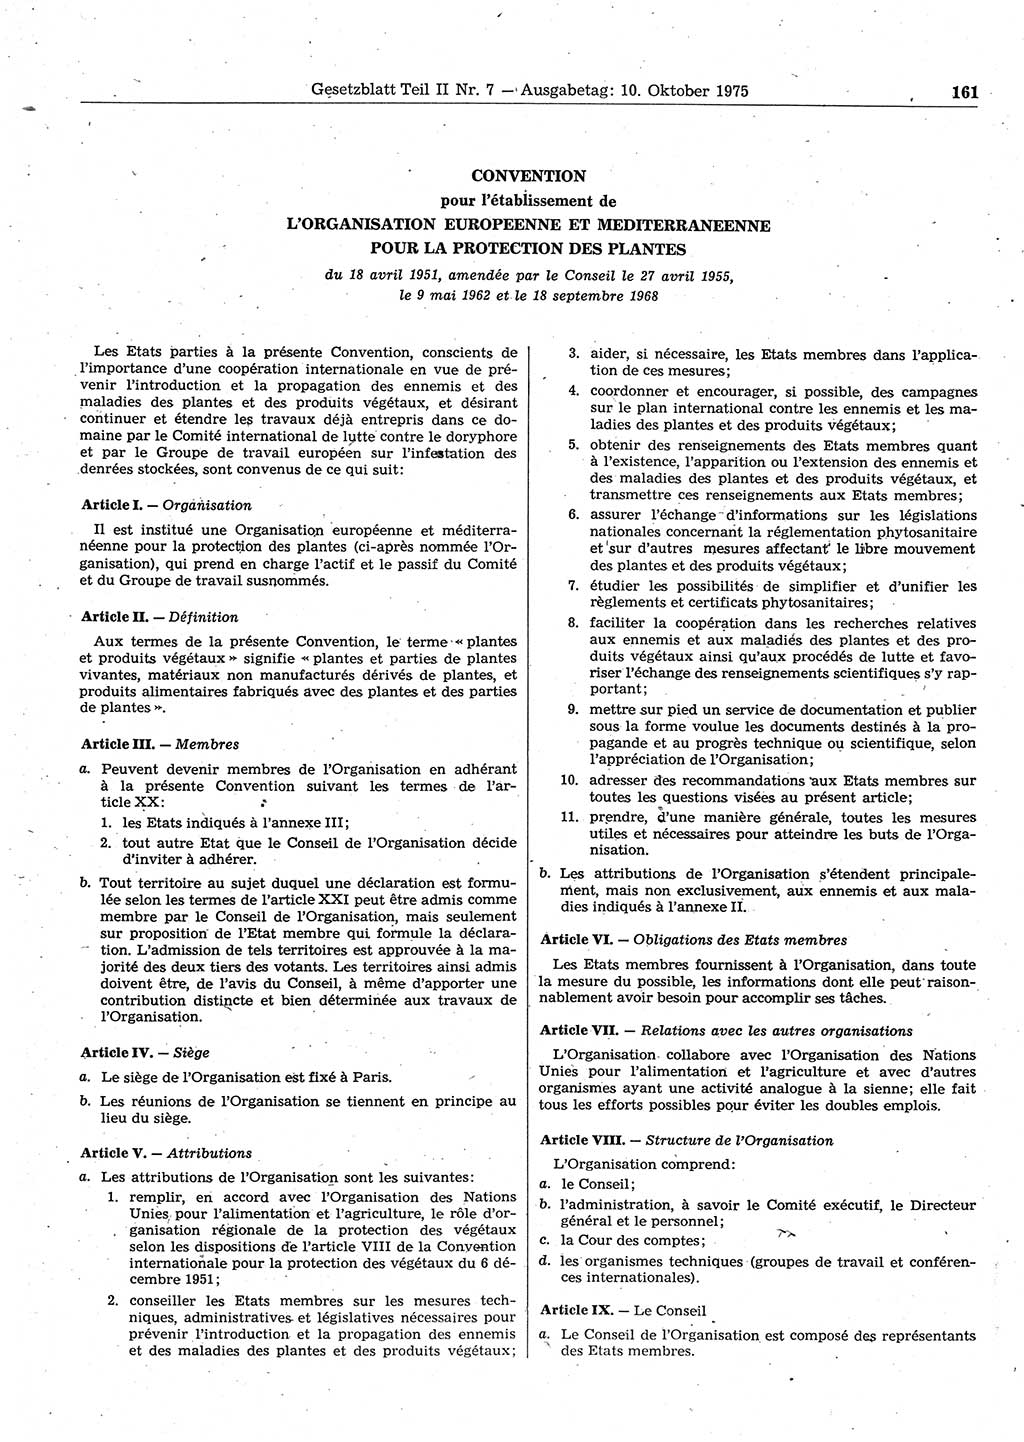 Gesetzblatt (GBl.) der Deutschen Demokratischen Republik (DDR) Teil ⅠⅠ 1975, Seite 161 (GBl. DDR ⅠⅠ 1975, S. 161)